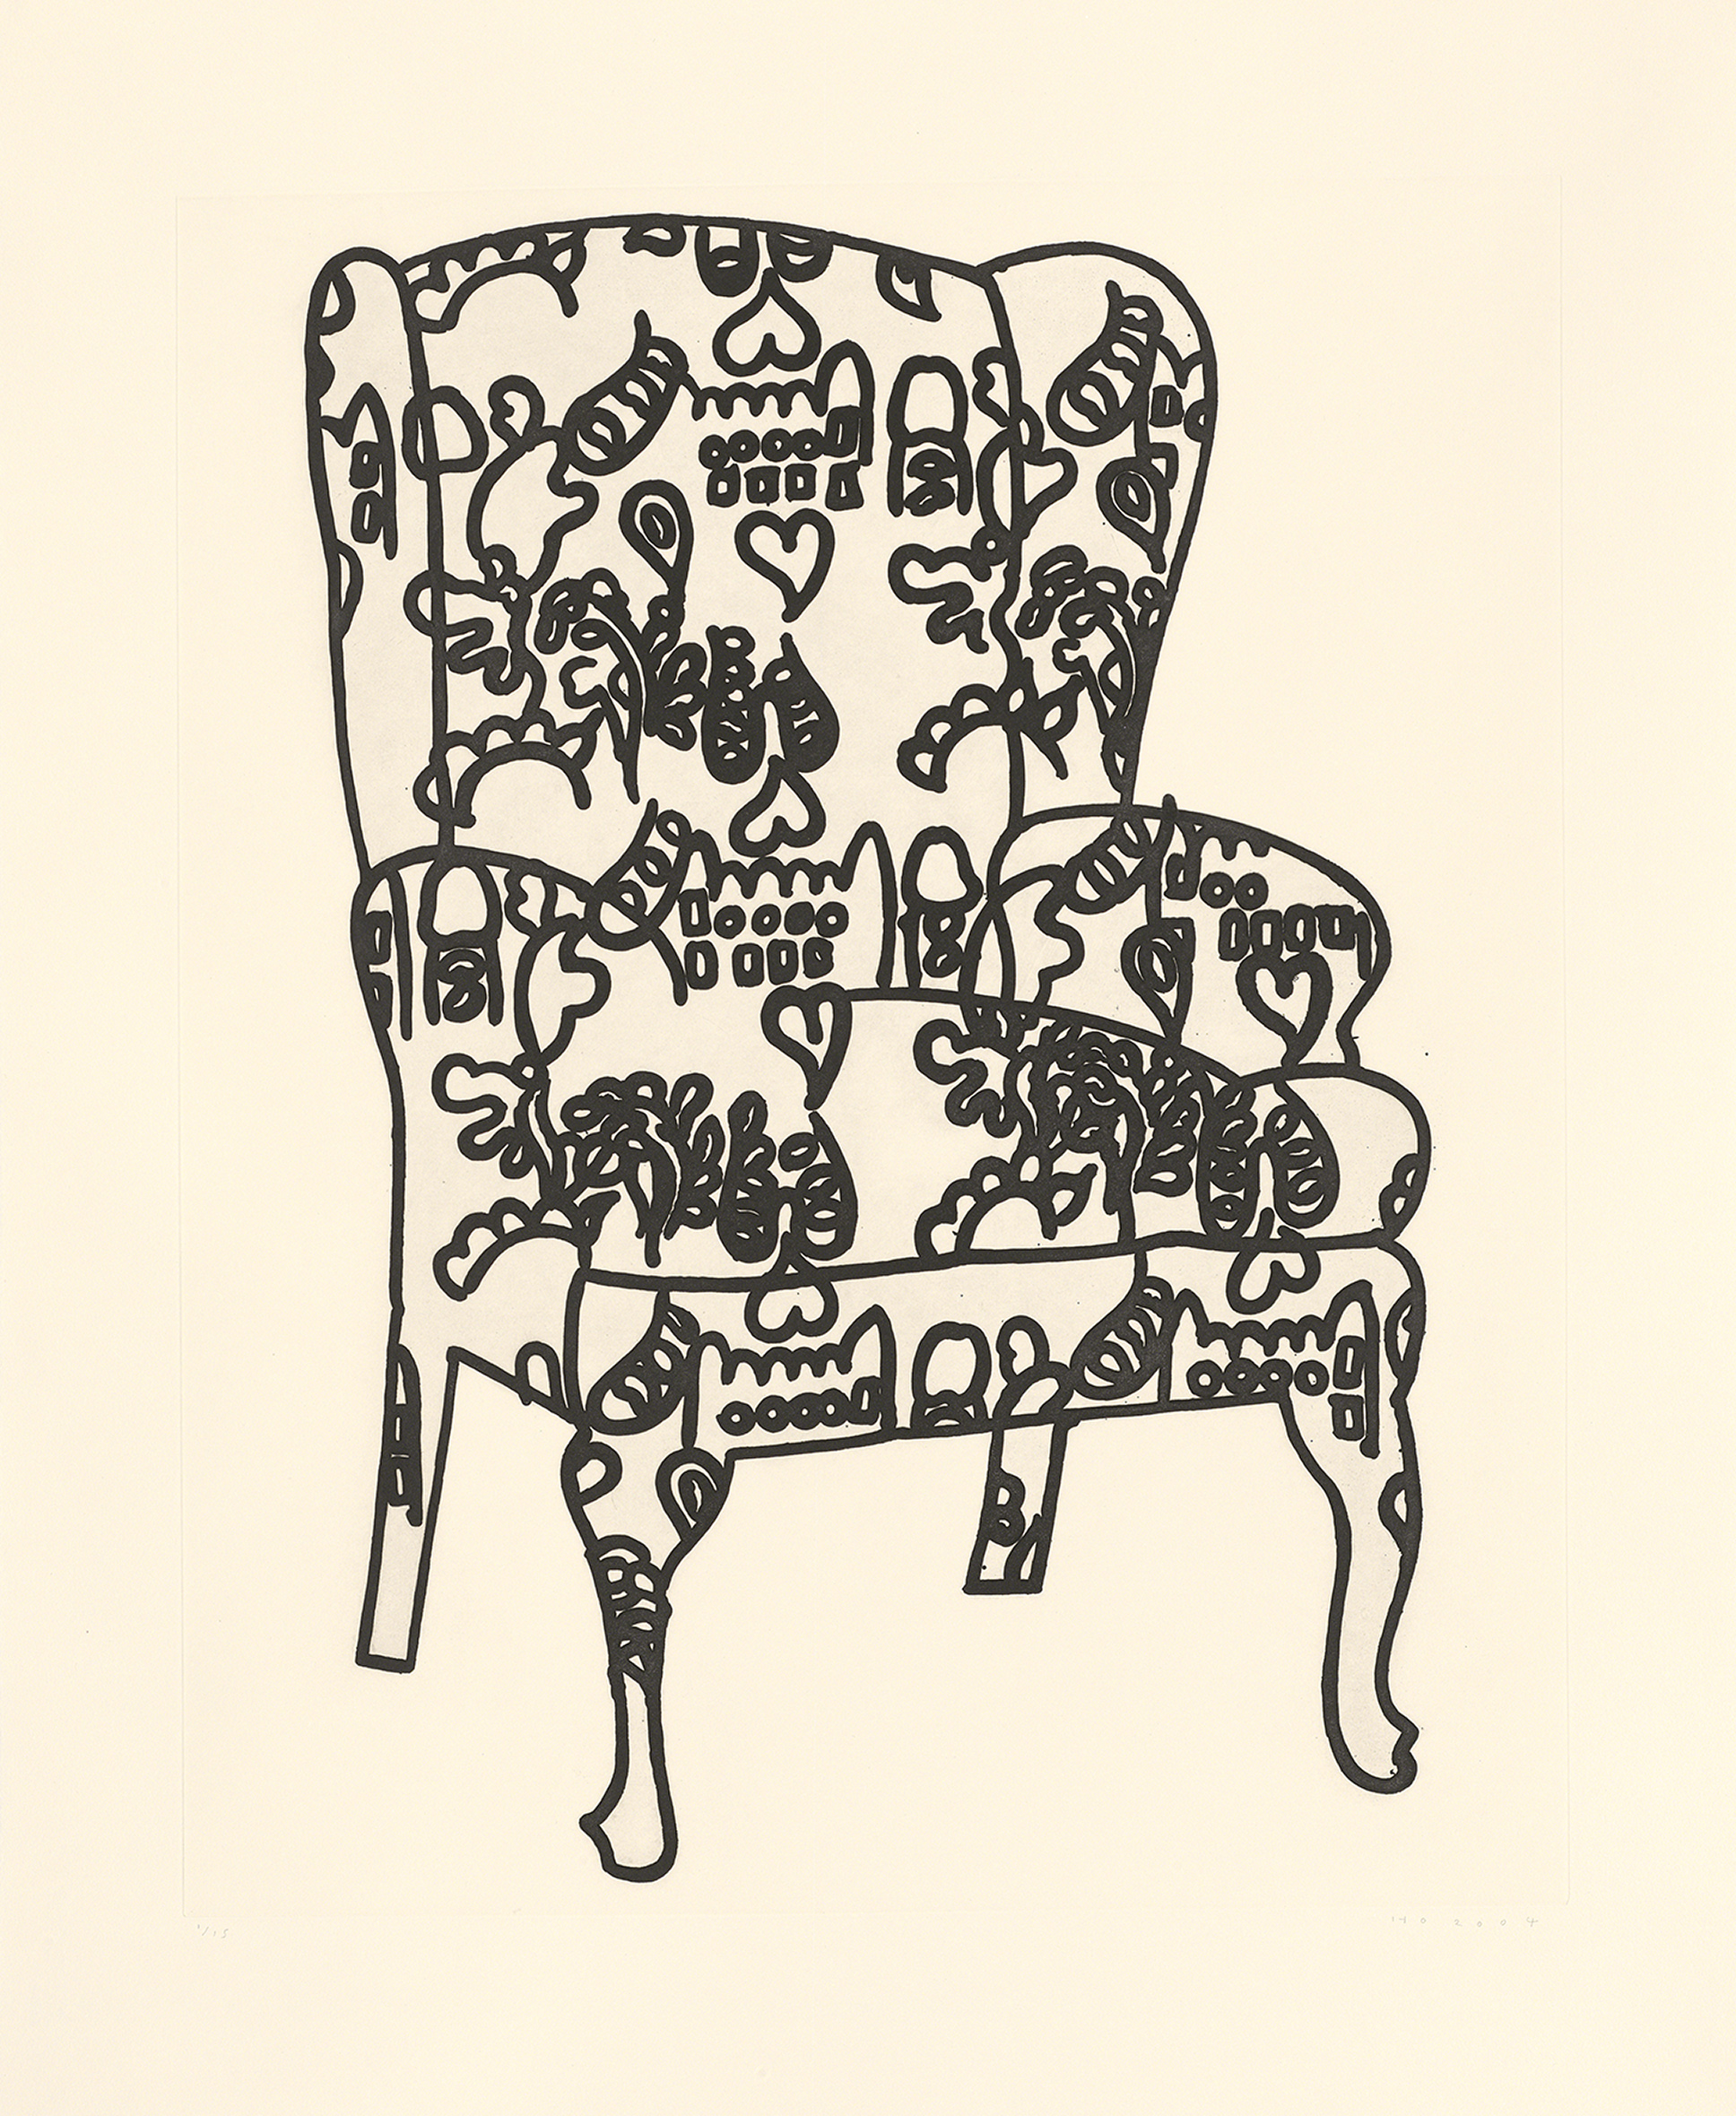 Love Chair